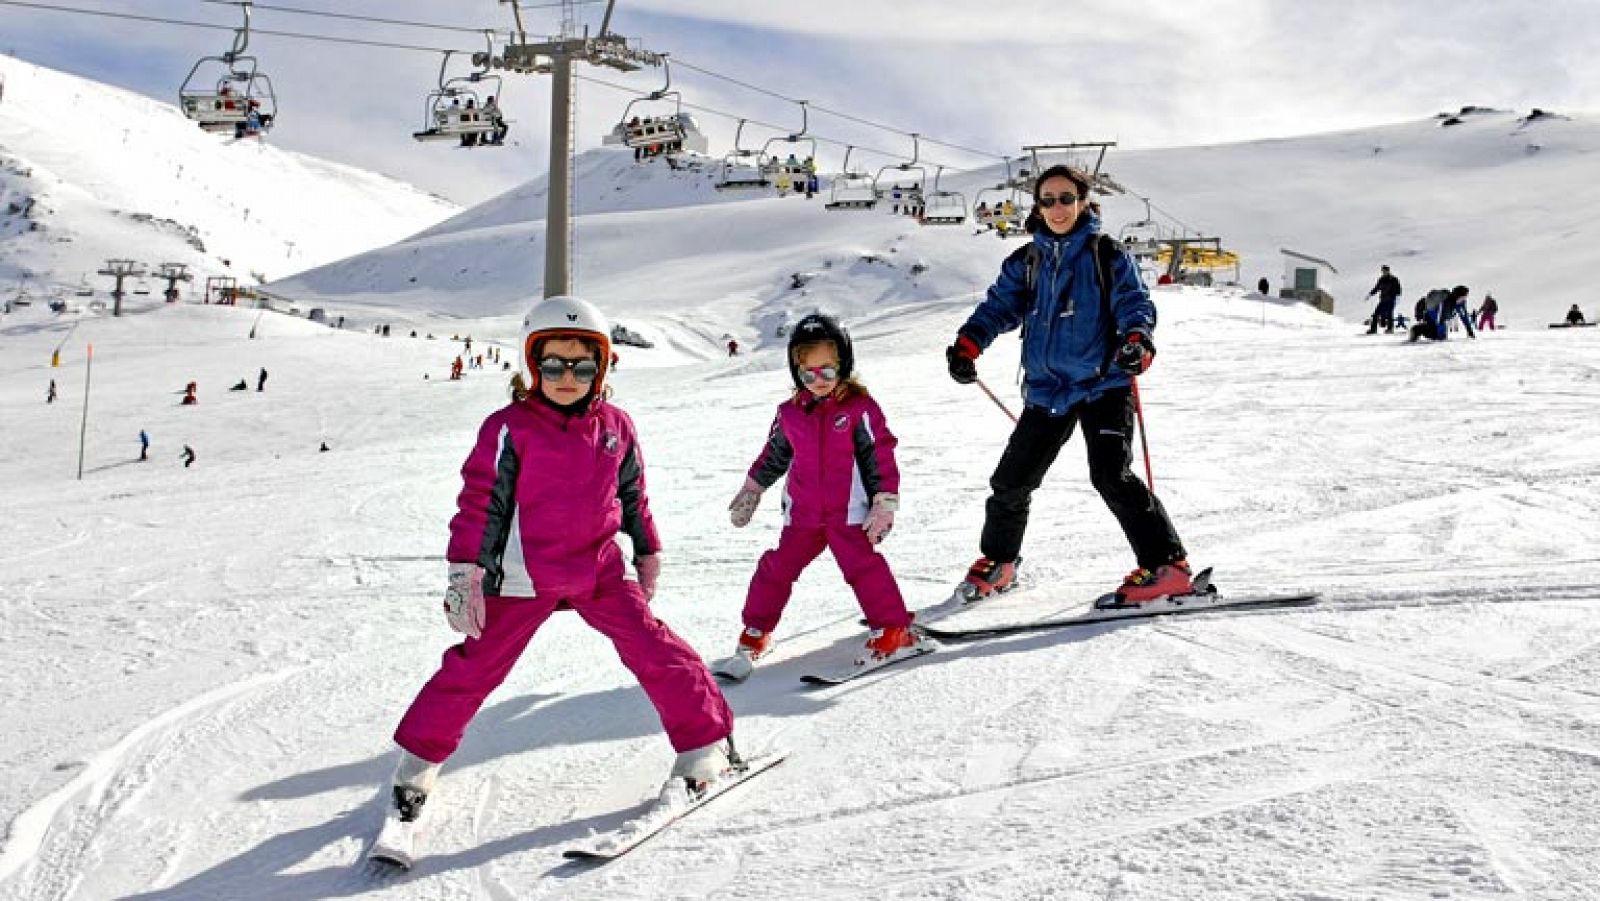 Sierra Nevada creará para la temporada invernal 2013-14 una nueva zona familiar denominada "Pista del Mar" en el corazón de Borreguiles, en el emplazamiento del antiguo snowpark, en una decidida apuesta por ampliar los espacios de nieve para la diver